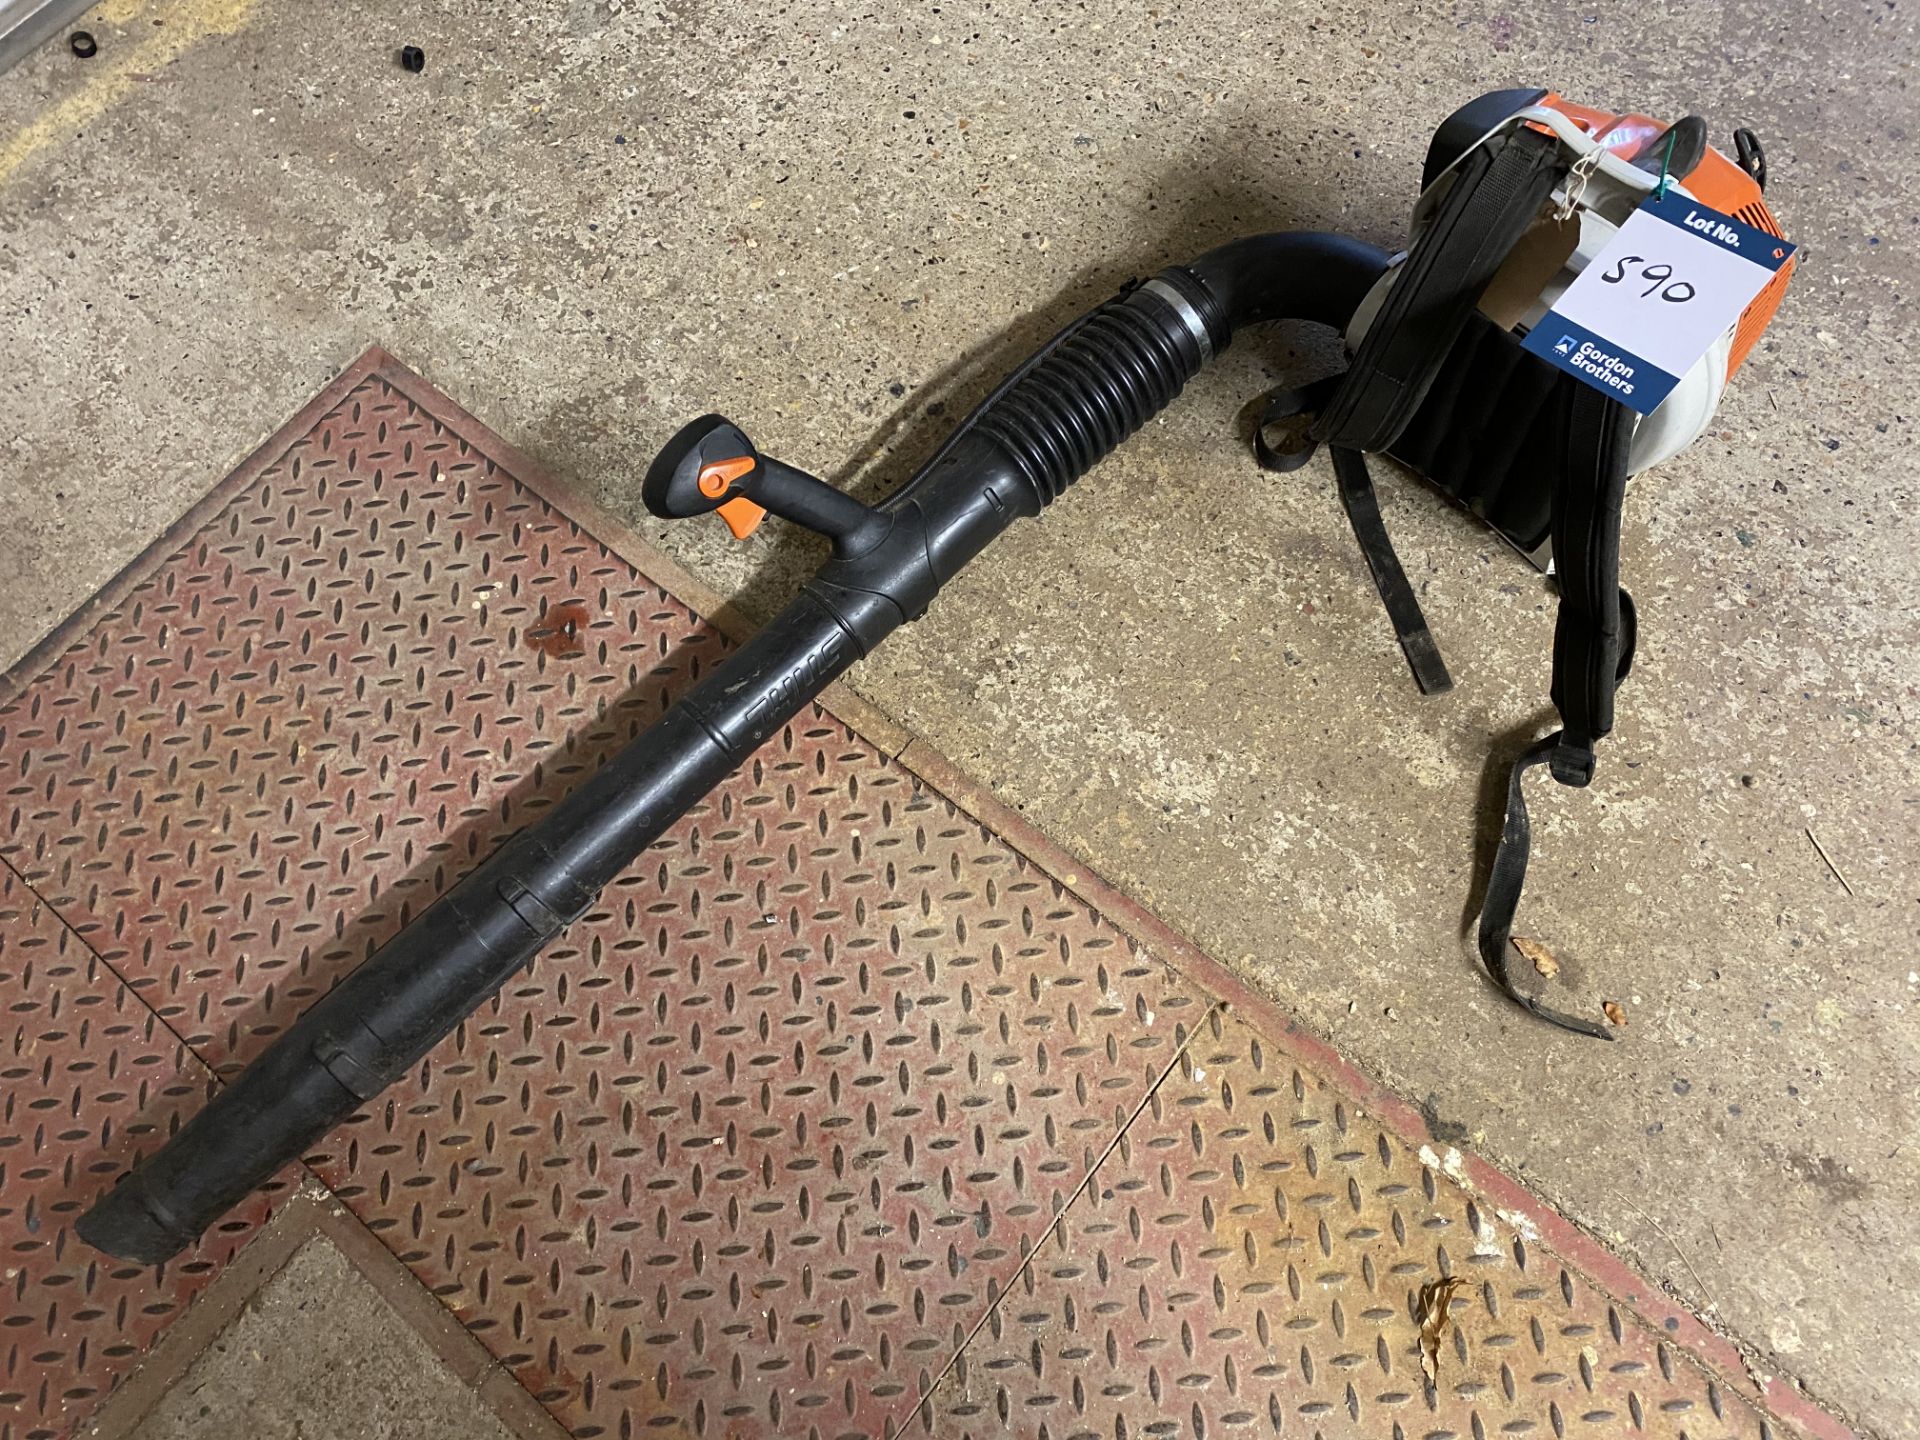 Stihl BR200 petrol garden leaf blower (2016) - located Workshop